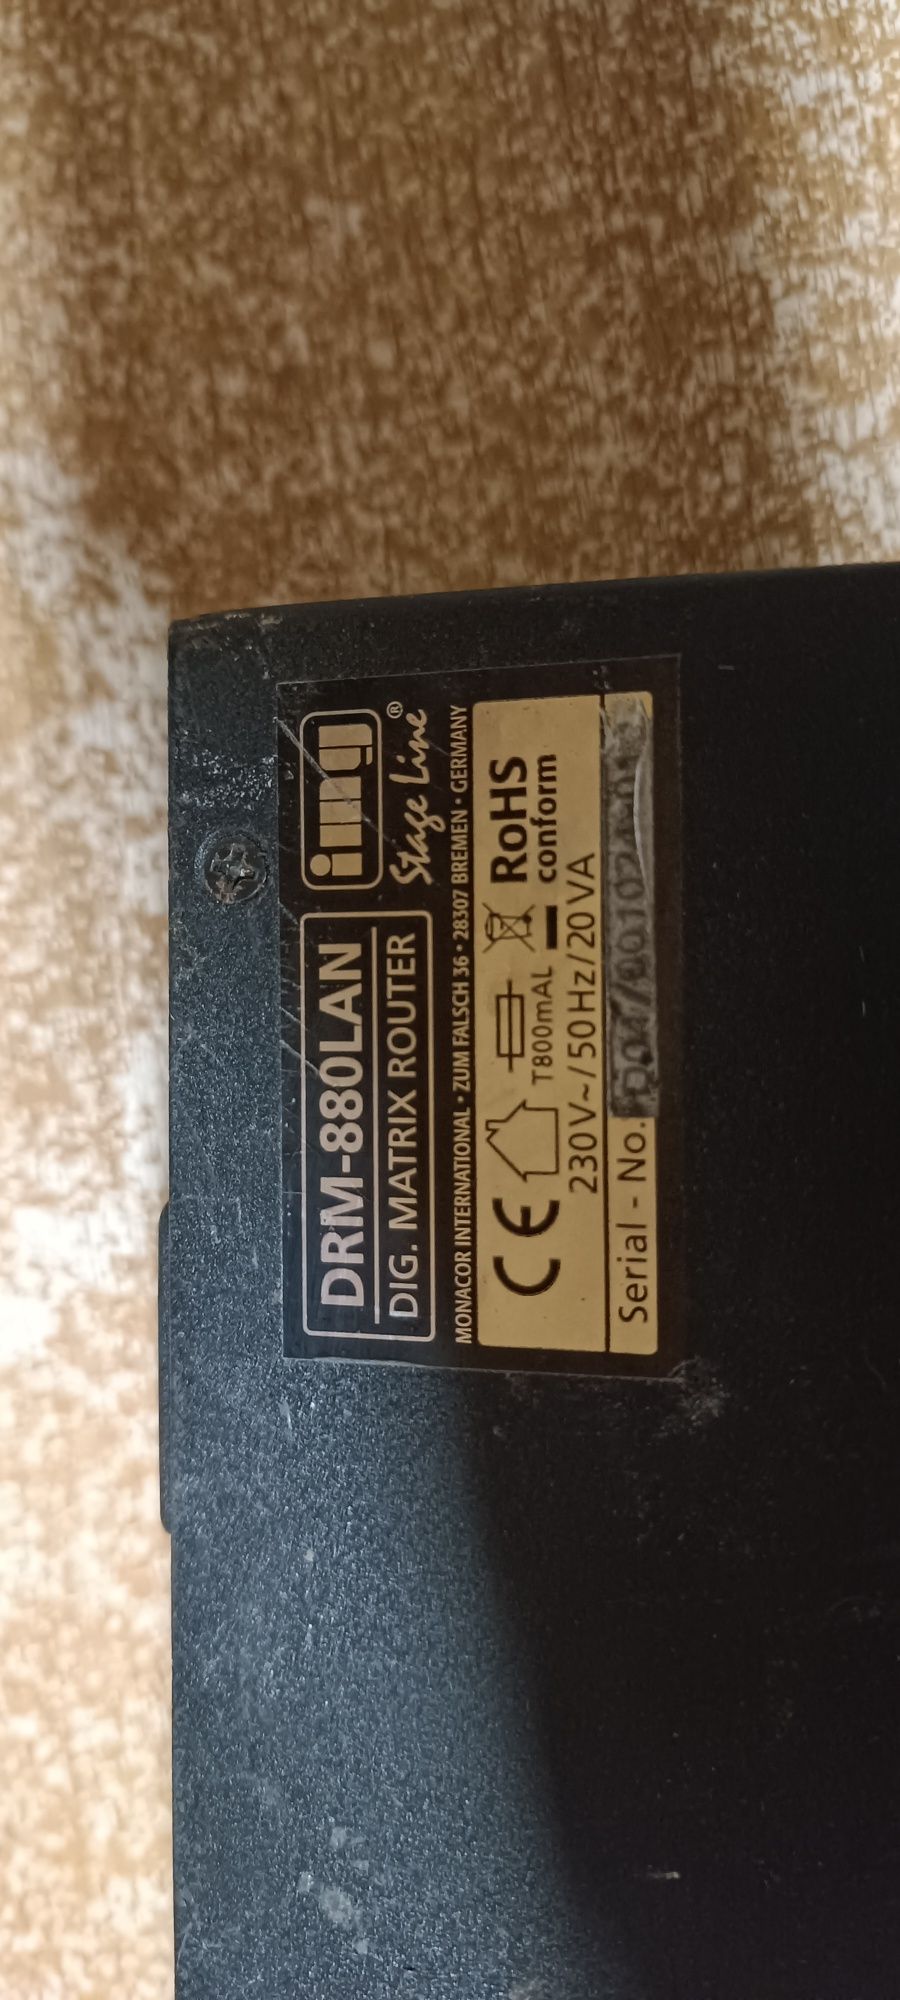 Procesor,matryca cyfrowa DRM-880LAN. Faktura